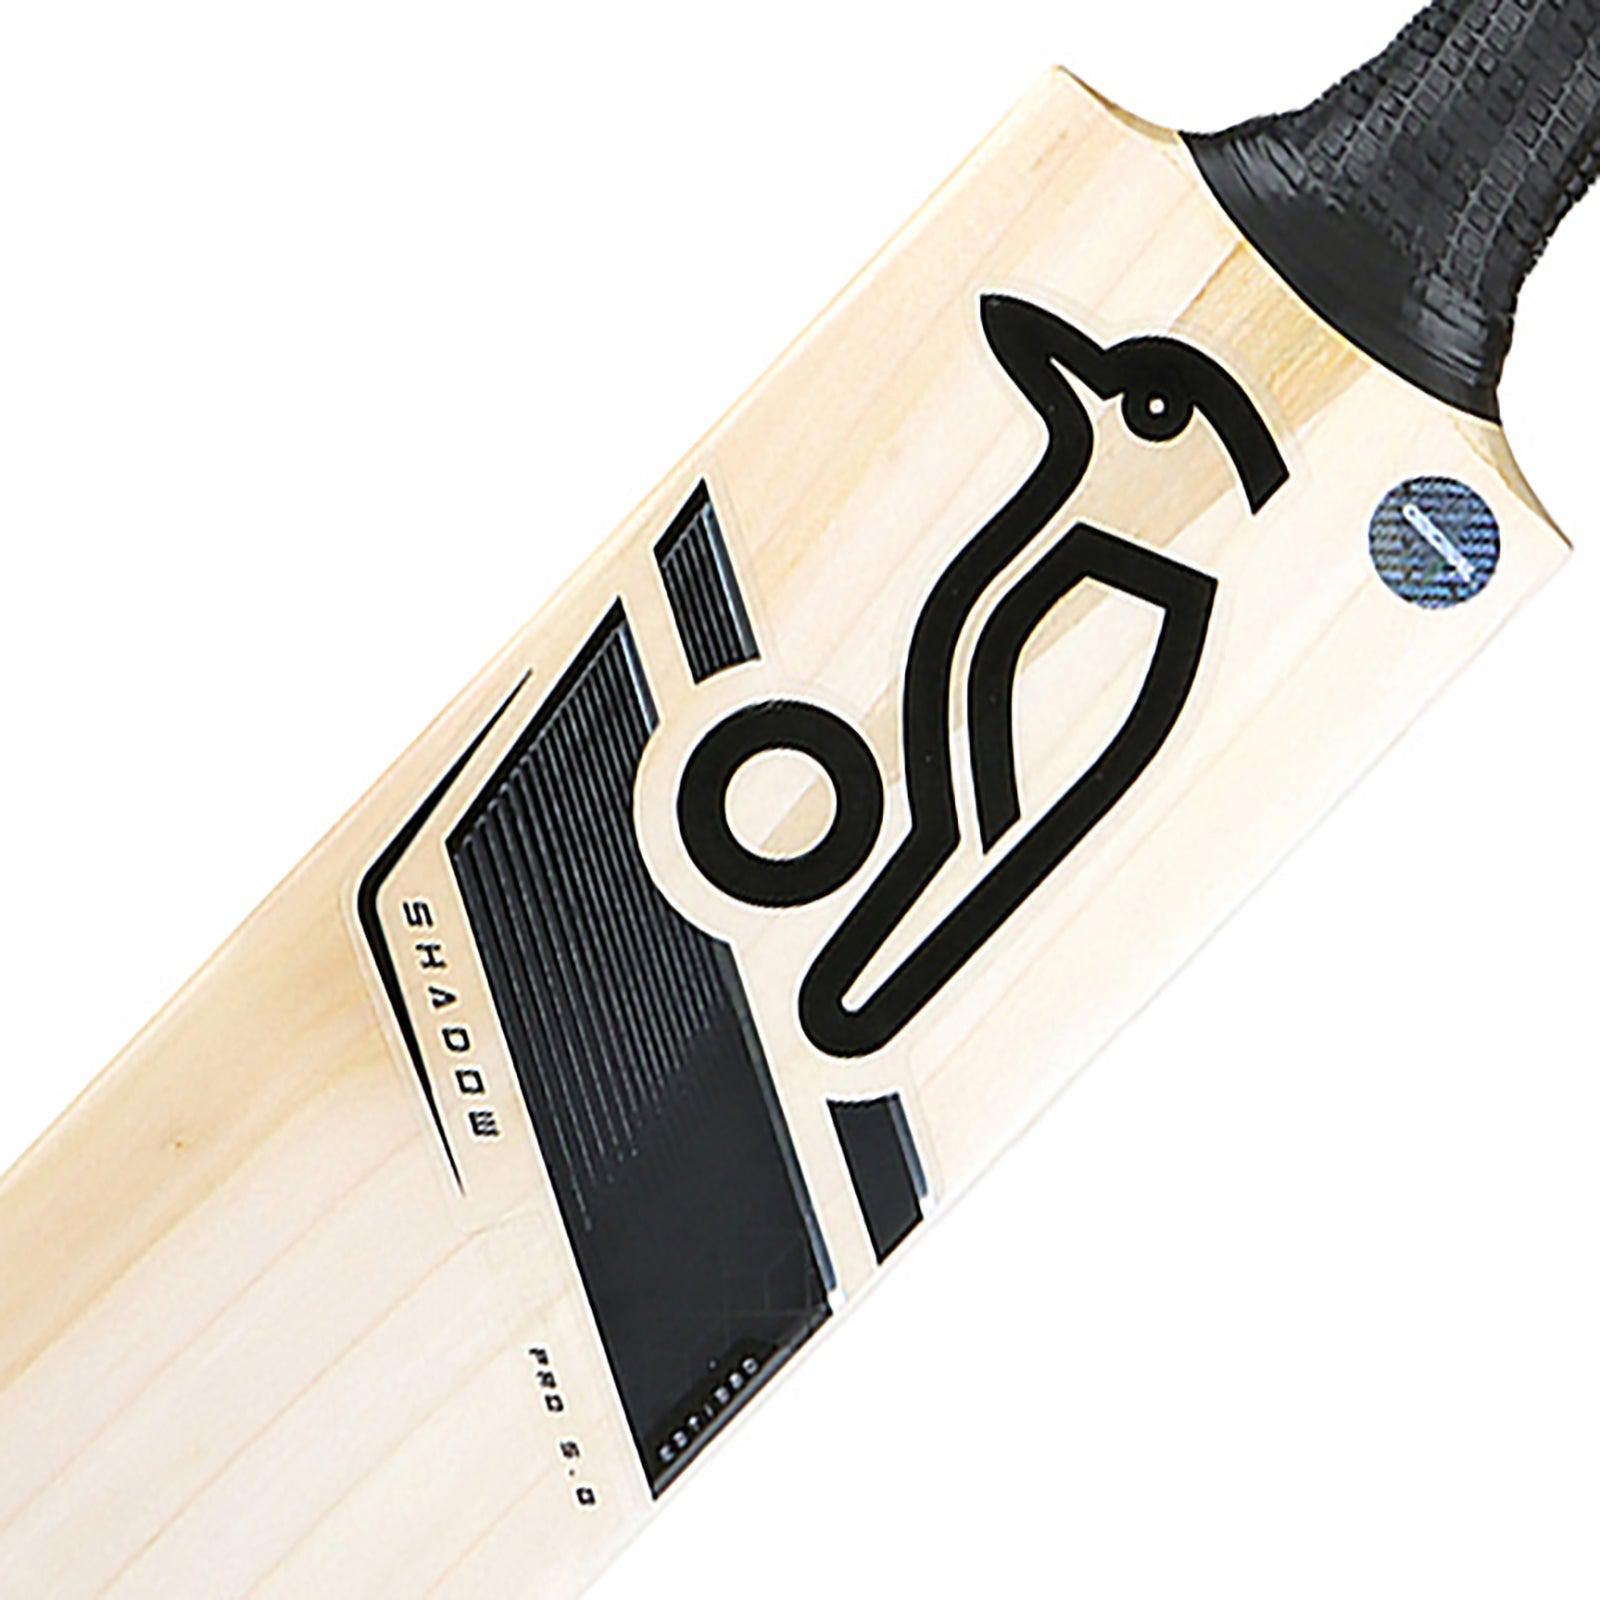 Kookaburra Shadow Pro 5.0 Cricket Bat - Senior